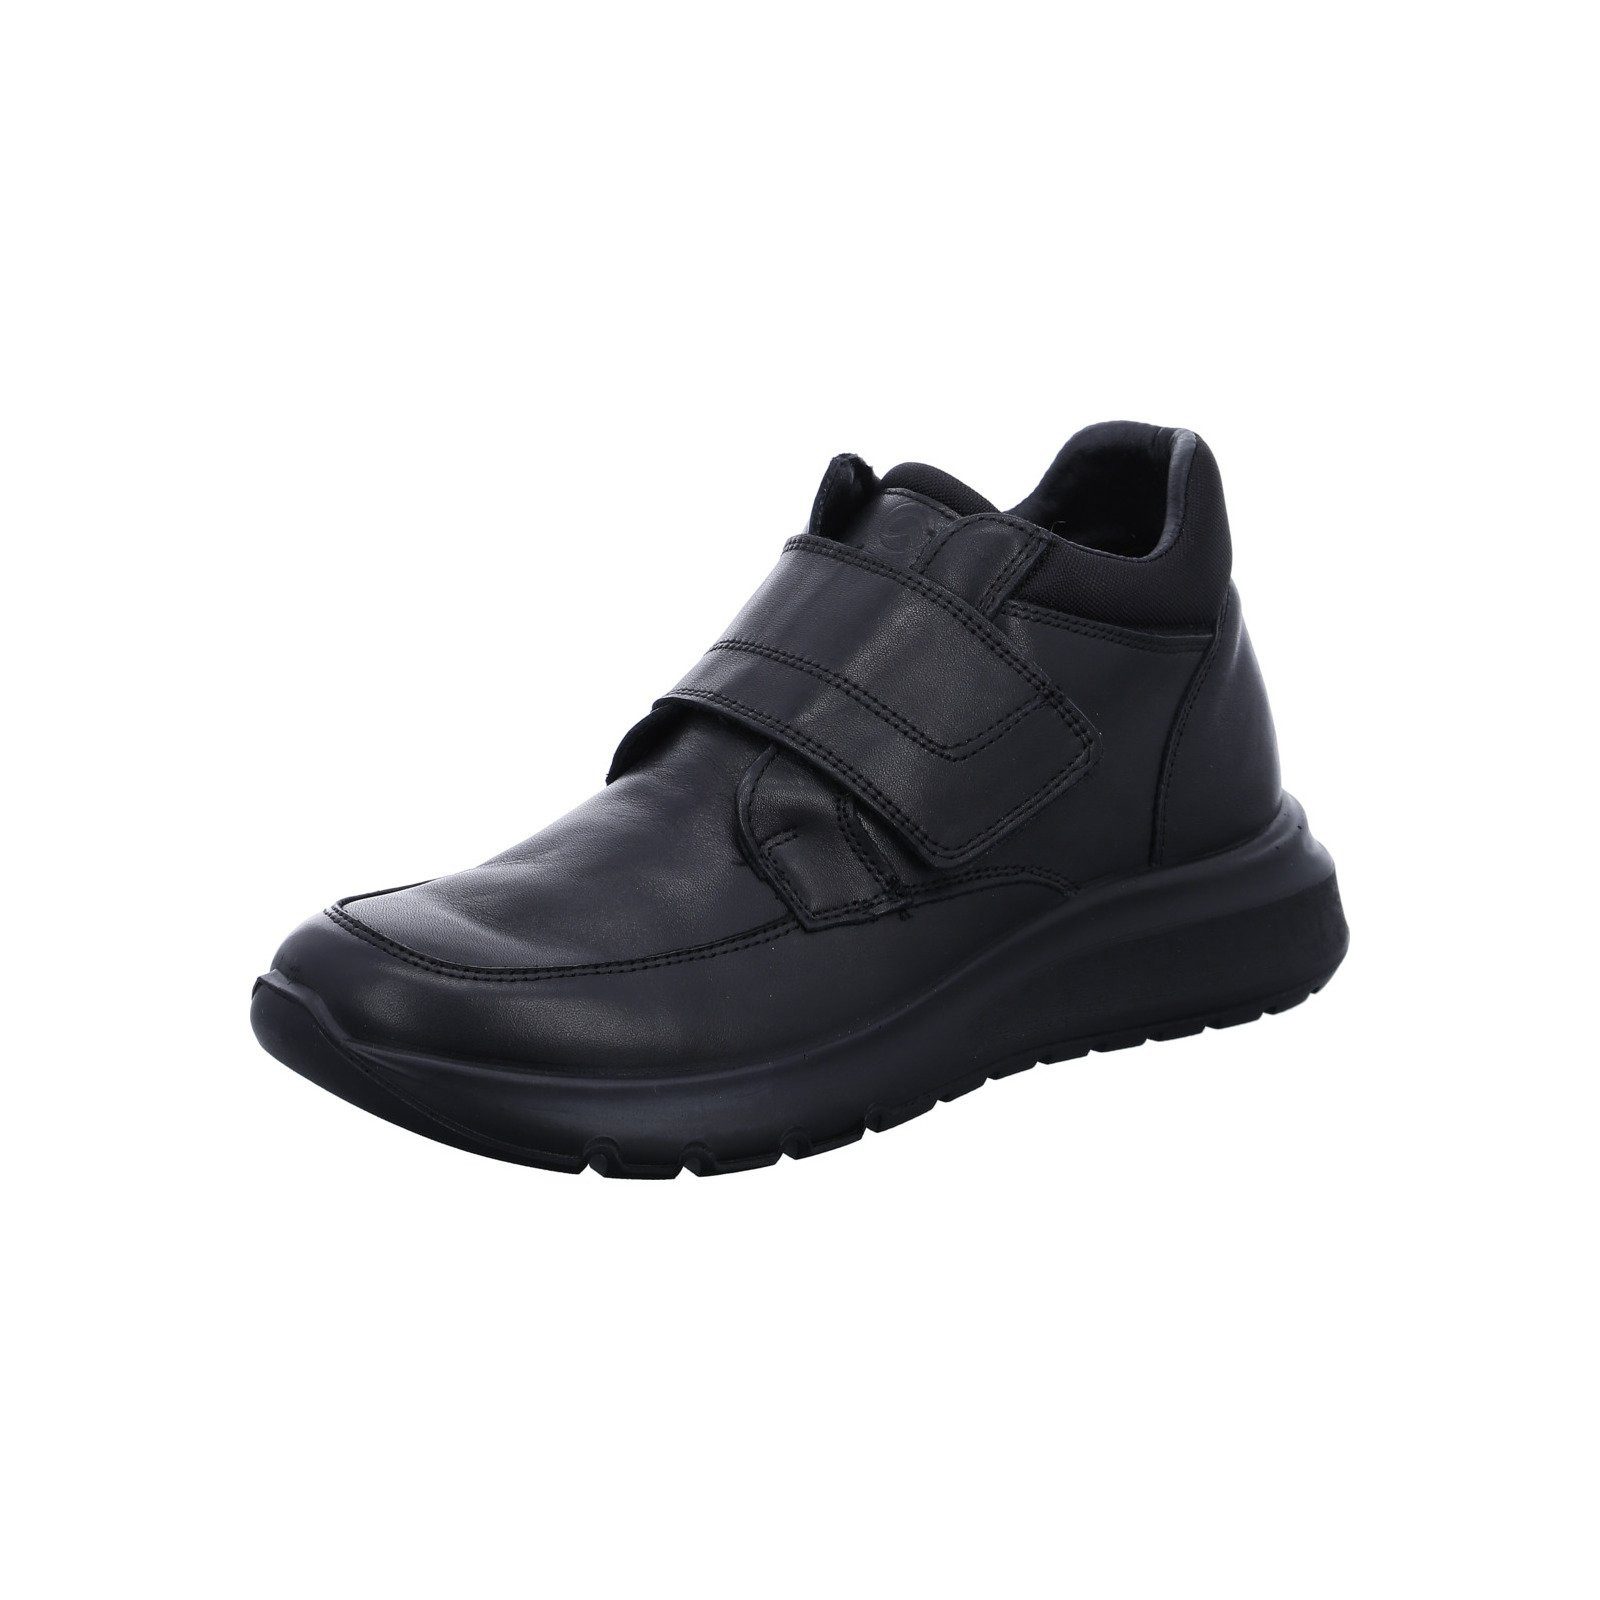 Ara Arizona - Herren Schuhe Slipper Materialmix schwarz